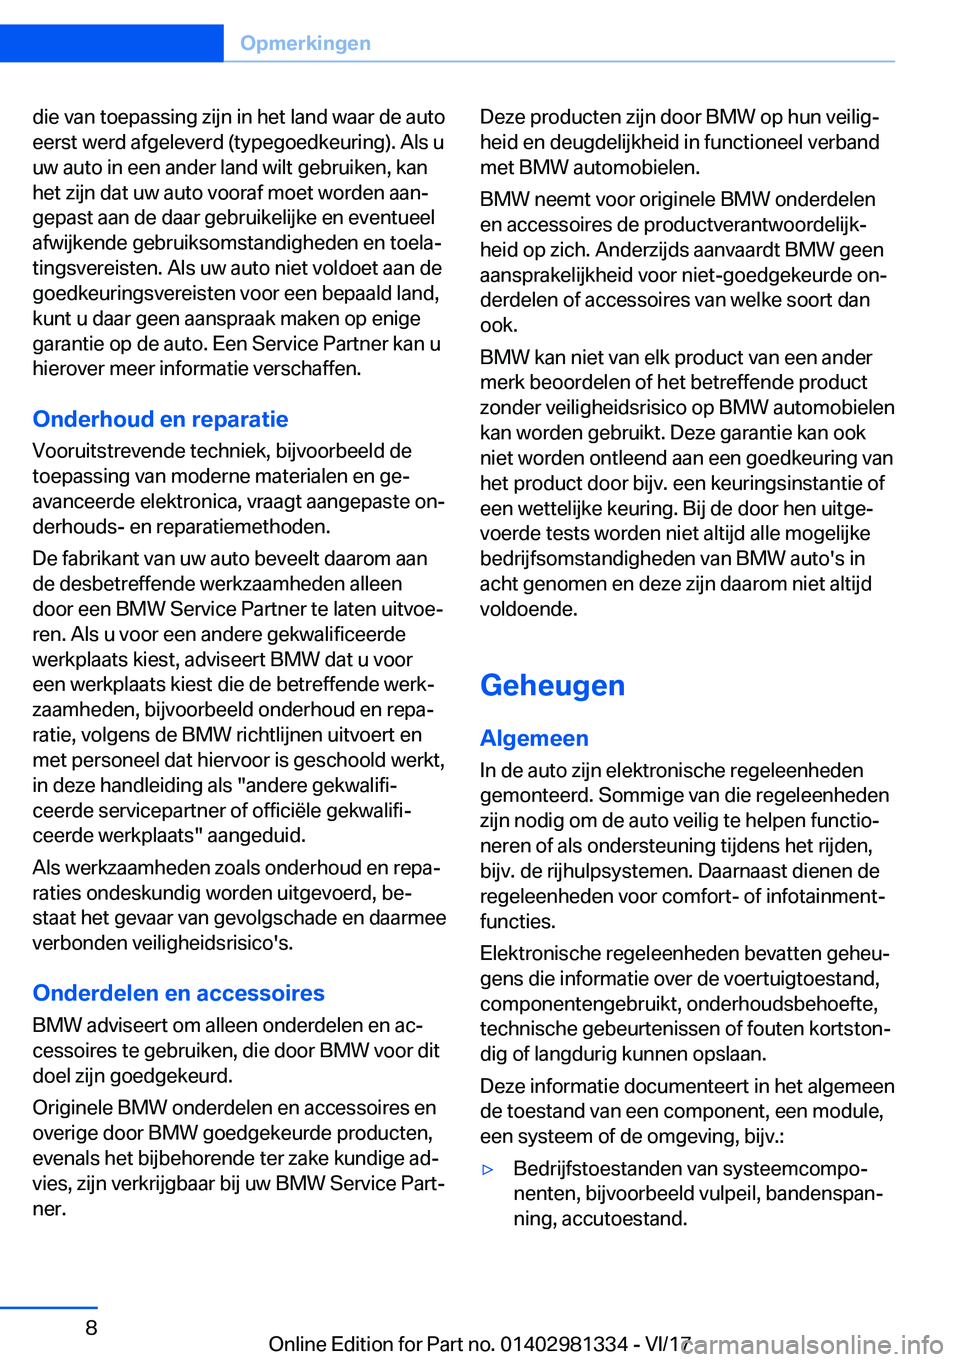 BMW X4 2018  Instructieboekjes (in Dutch) �d�i�e� �v�a�n� �t�o�e�p�a�s�s�i�n�g� �z�i�j�n� �i�n� �h�e�t� �l�a�n�d� �w�a�a�r� �d�e� �a�u�t�o
�e�e�r�s�t� �w�e�r�d� �a�f�g�e�l�e�v�e�r�d� �(�t�y�p�e�g�o�e�d�k�e�u�r�i�n�g�)�.� �A�l�s� �u �u�w� �a�u